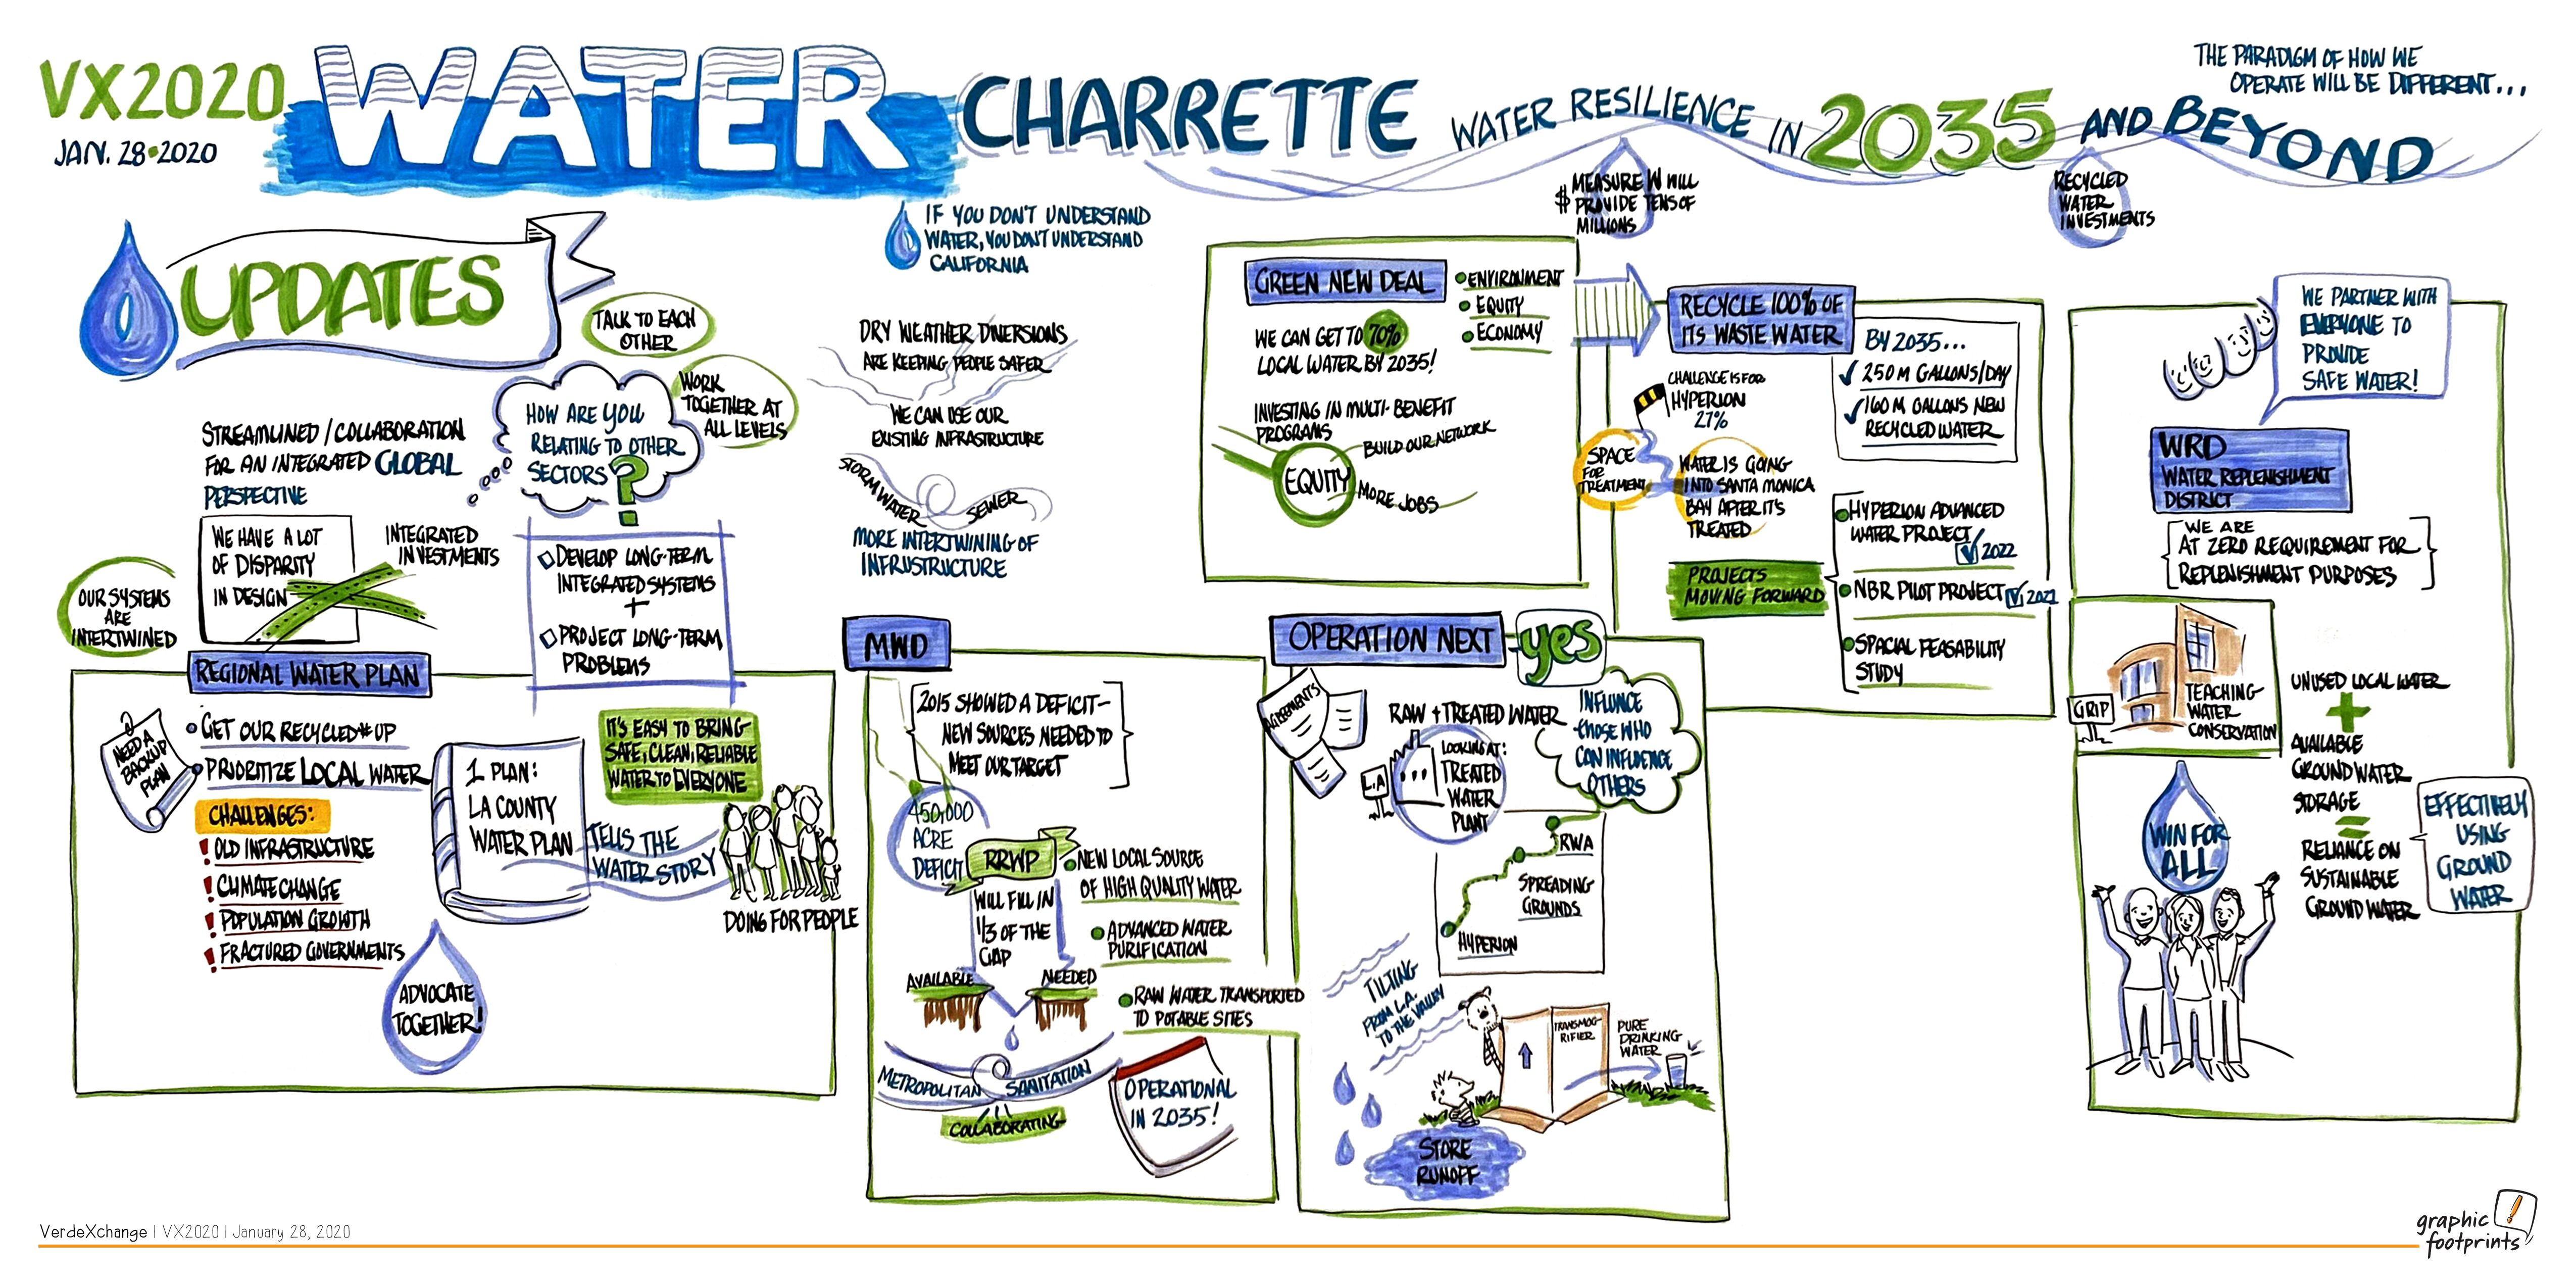 VX2020 Water Charrette Graphic, Alece Birbach